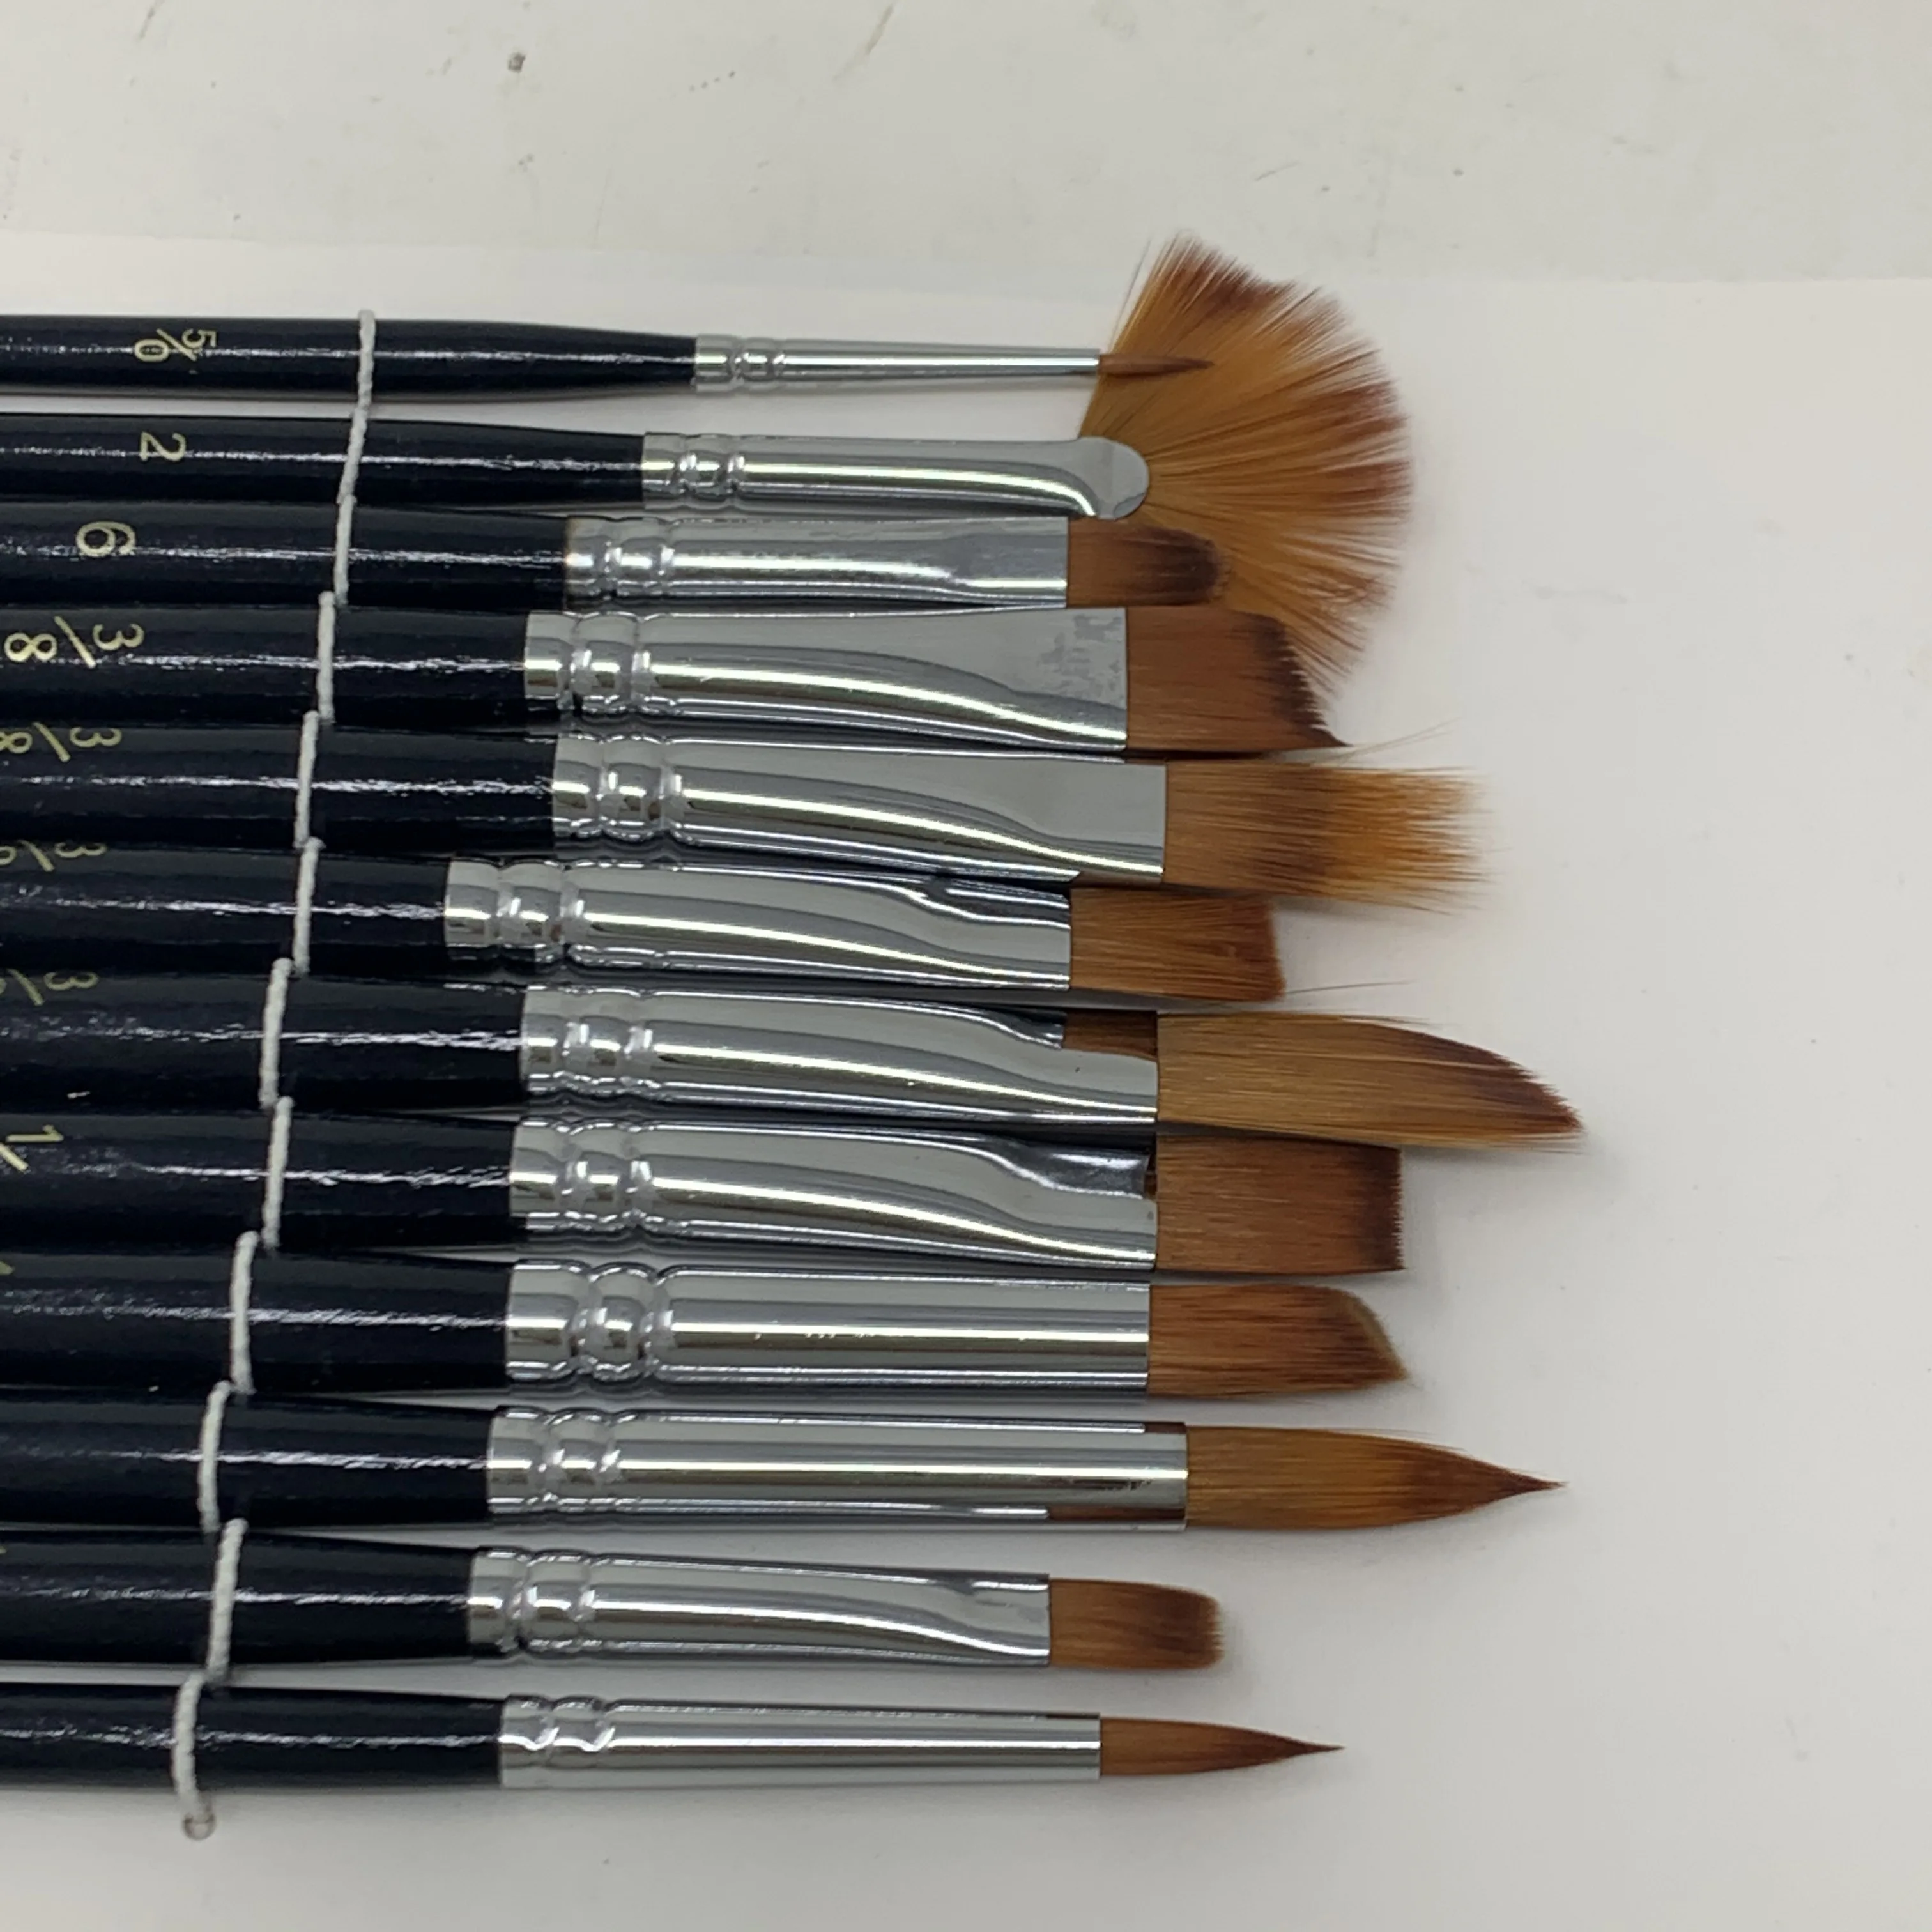 Nylon Hair Material Artist Brushes Set 12PK Painting Brush Set